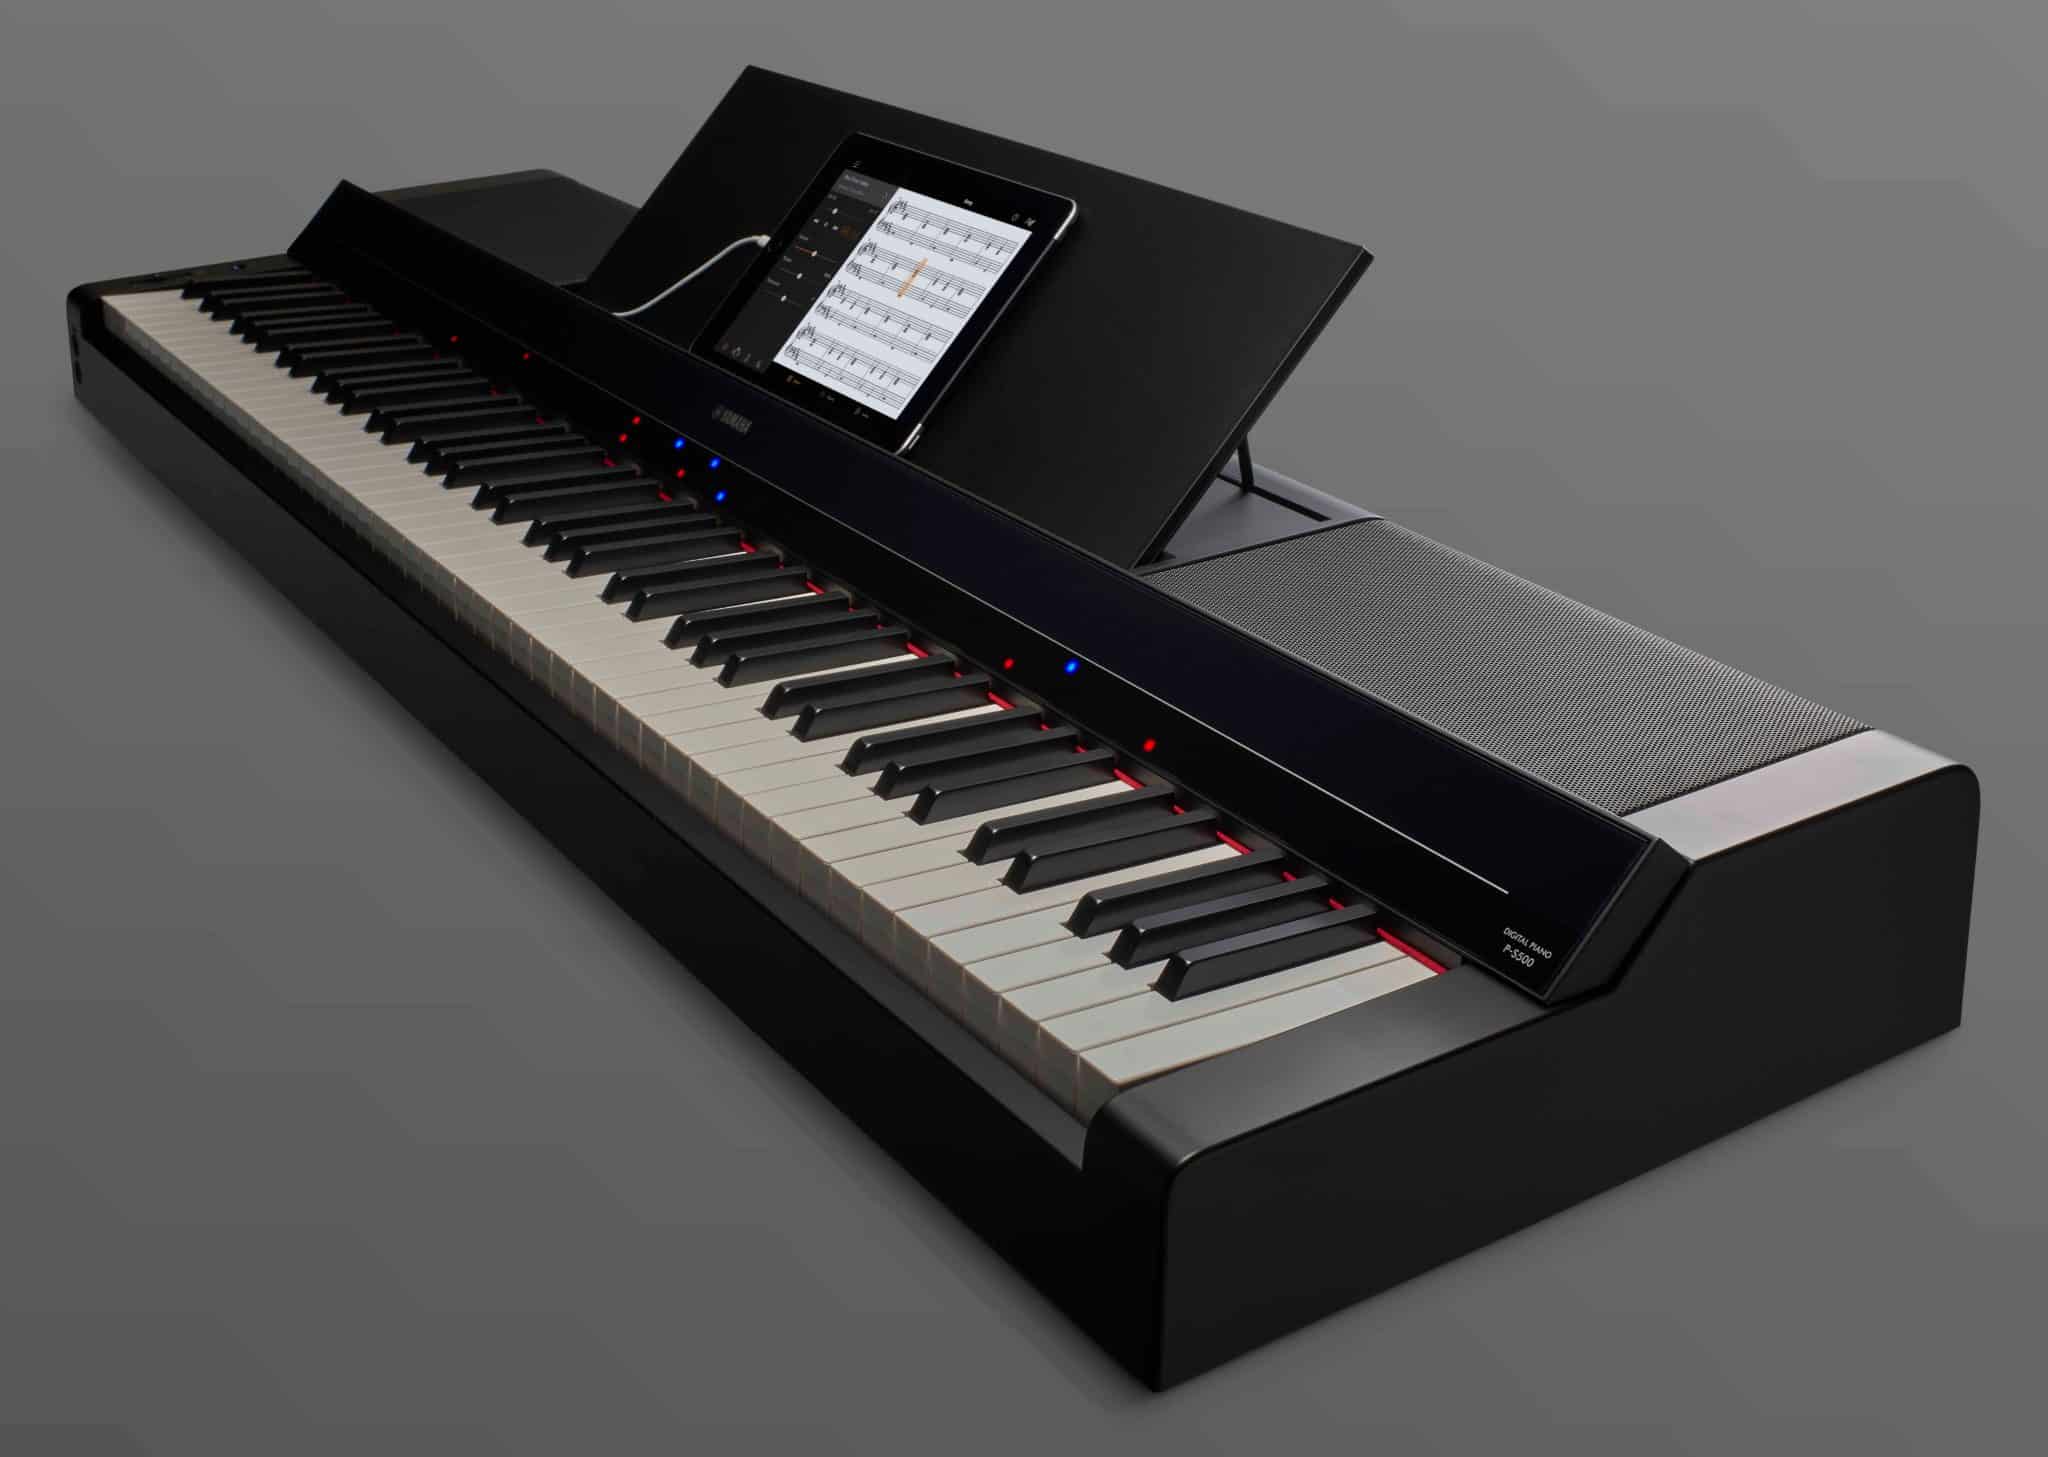 Piano numérique YAMAHA P-S500 Premium